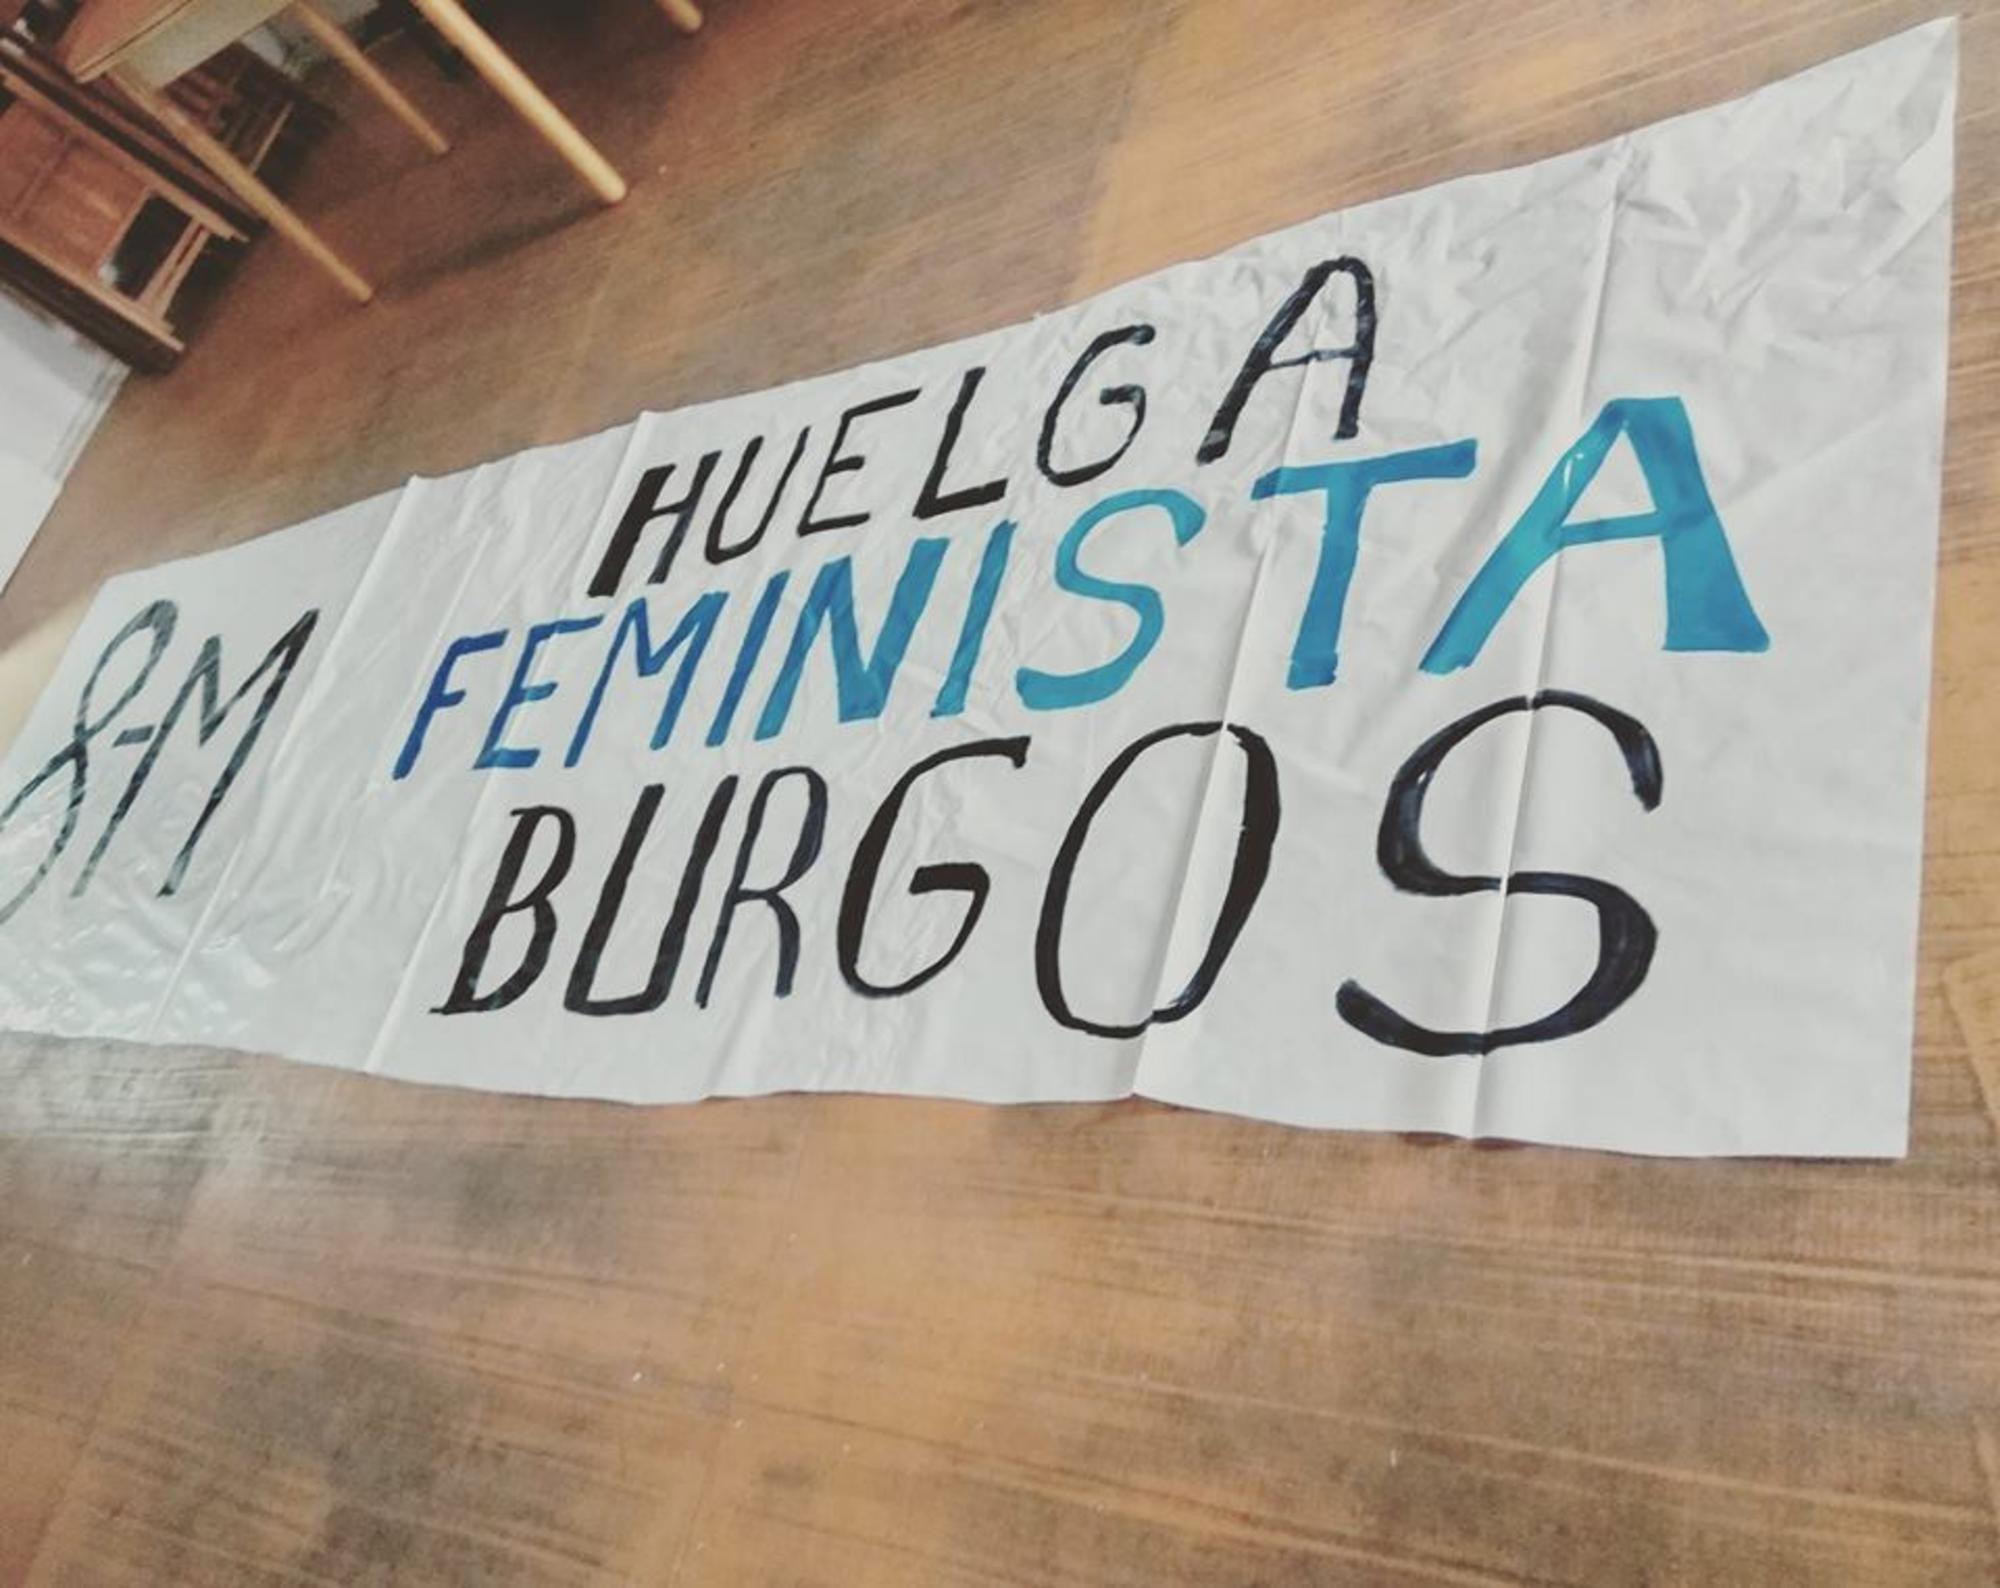 Huelga Feminista Burgos